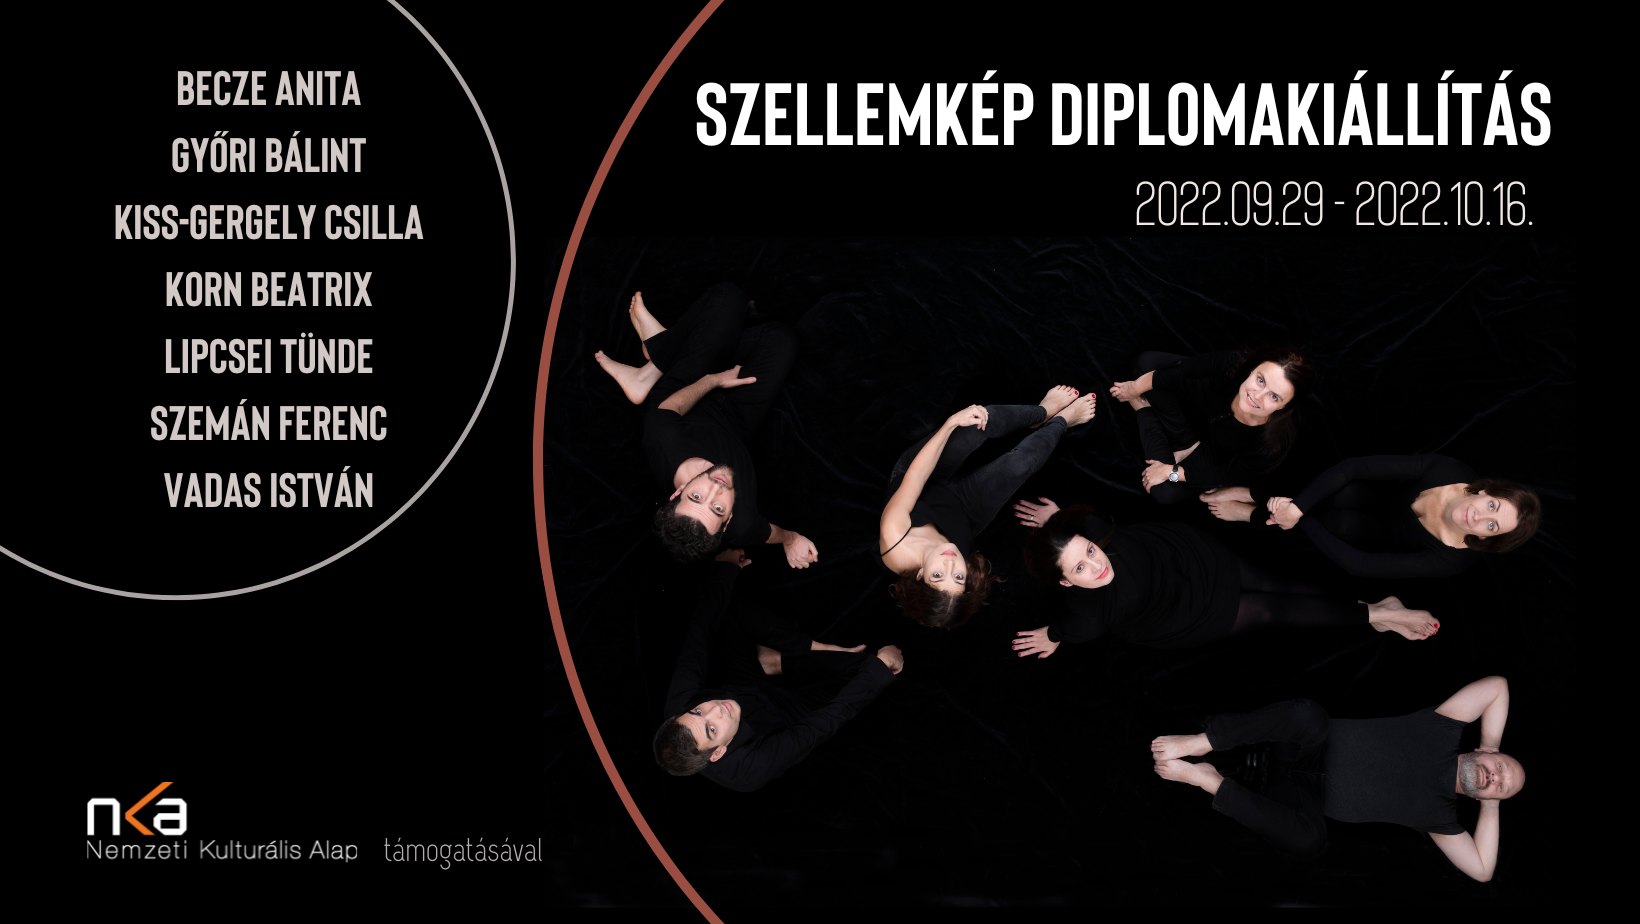 You are currently viewing Szellemkép Diplomakiállítás 2022